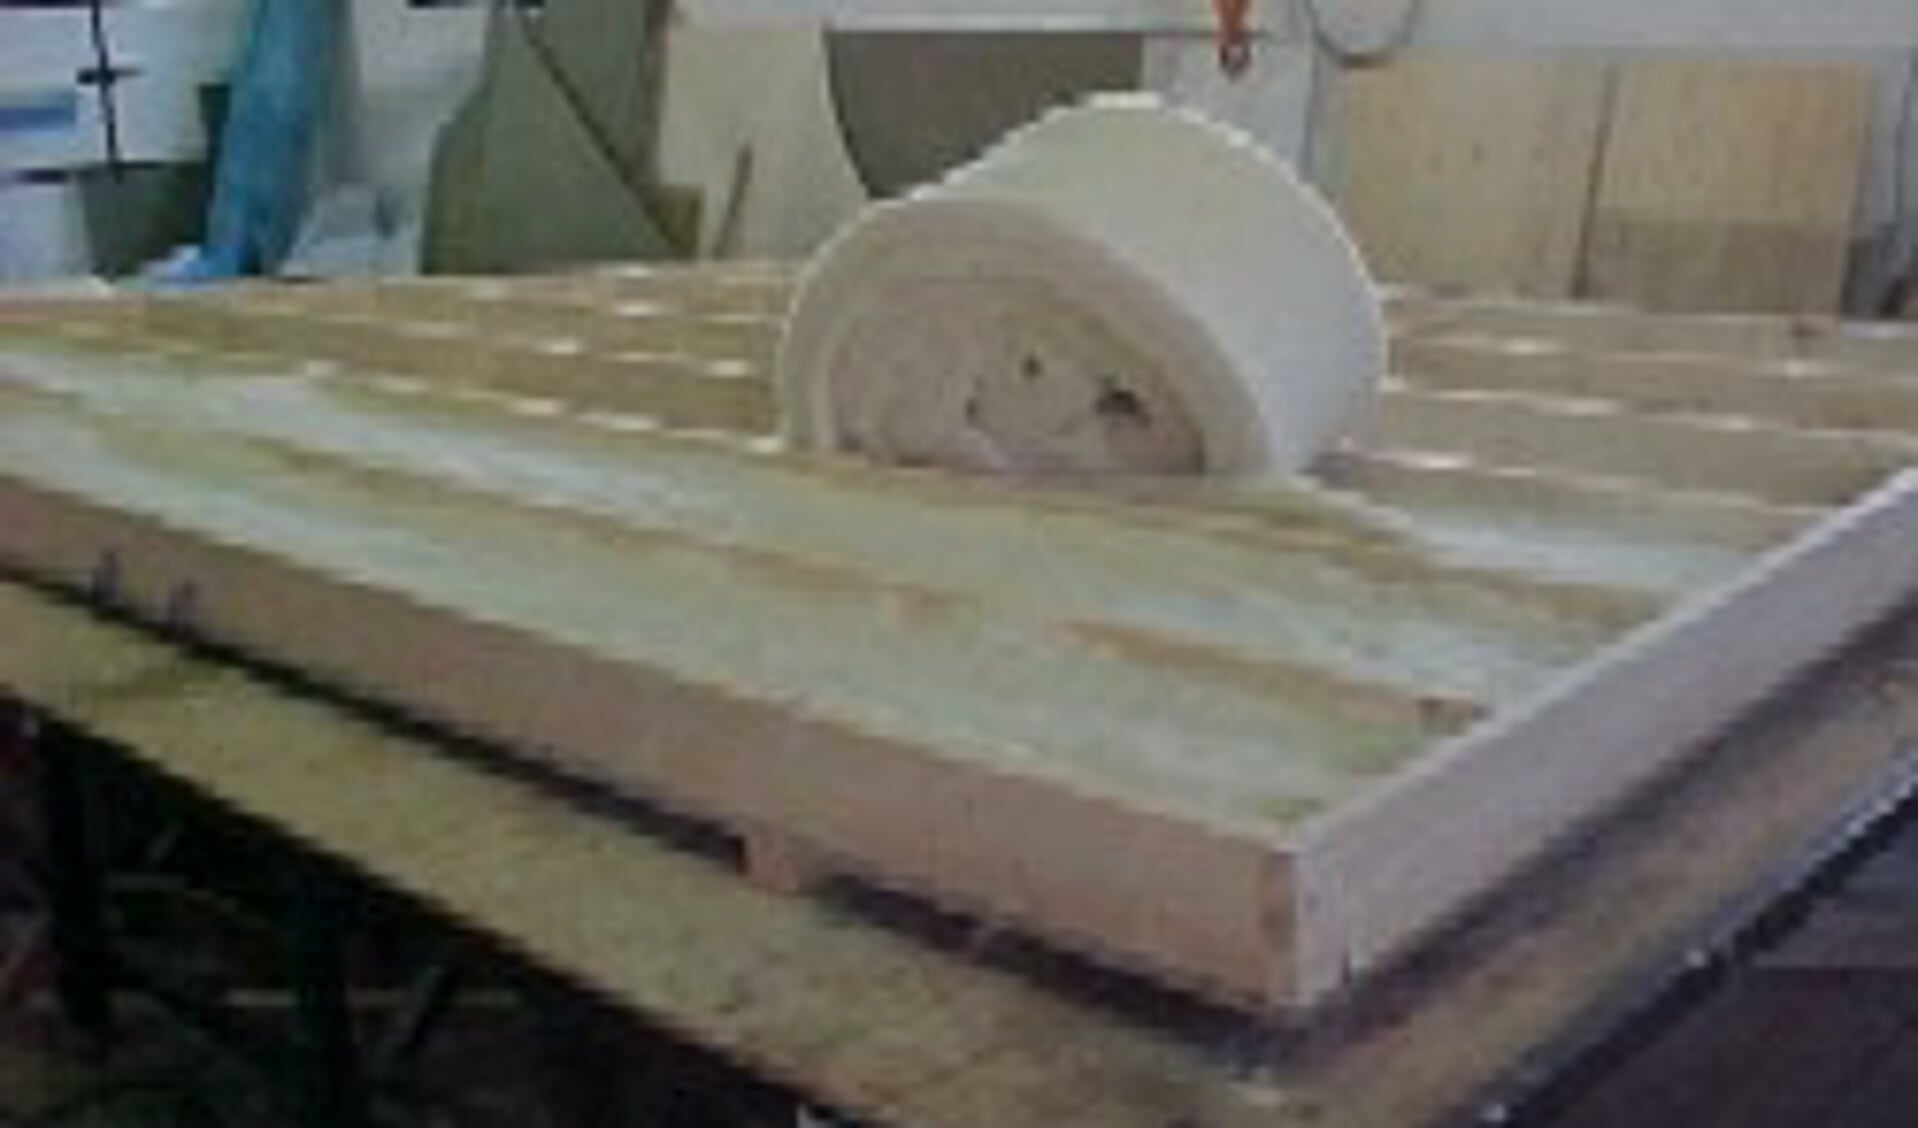 De schapenwol wordt bij het bouwbedrijf verwerkt in de daarvoor opgezette afdeling houtskeletbouw.